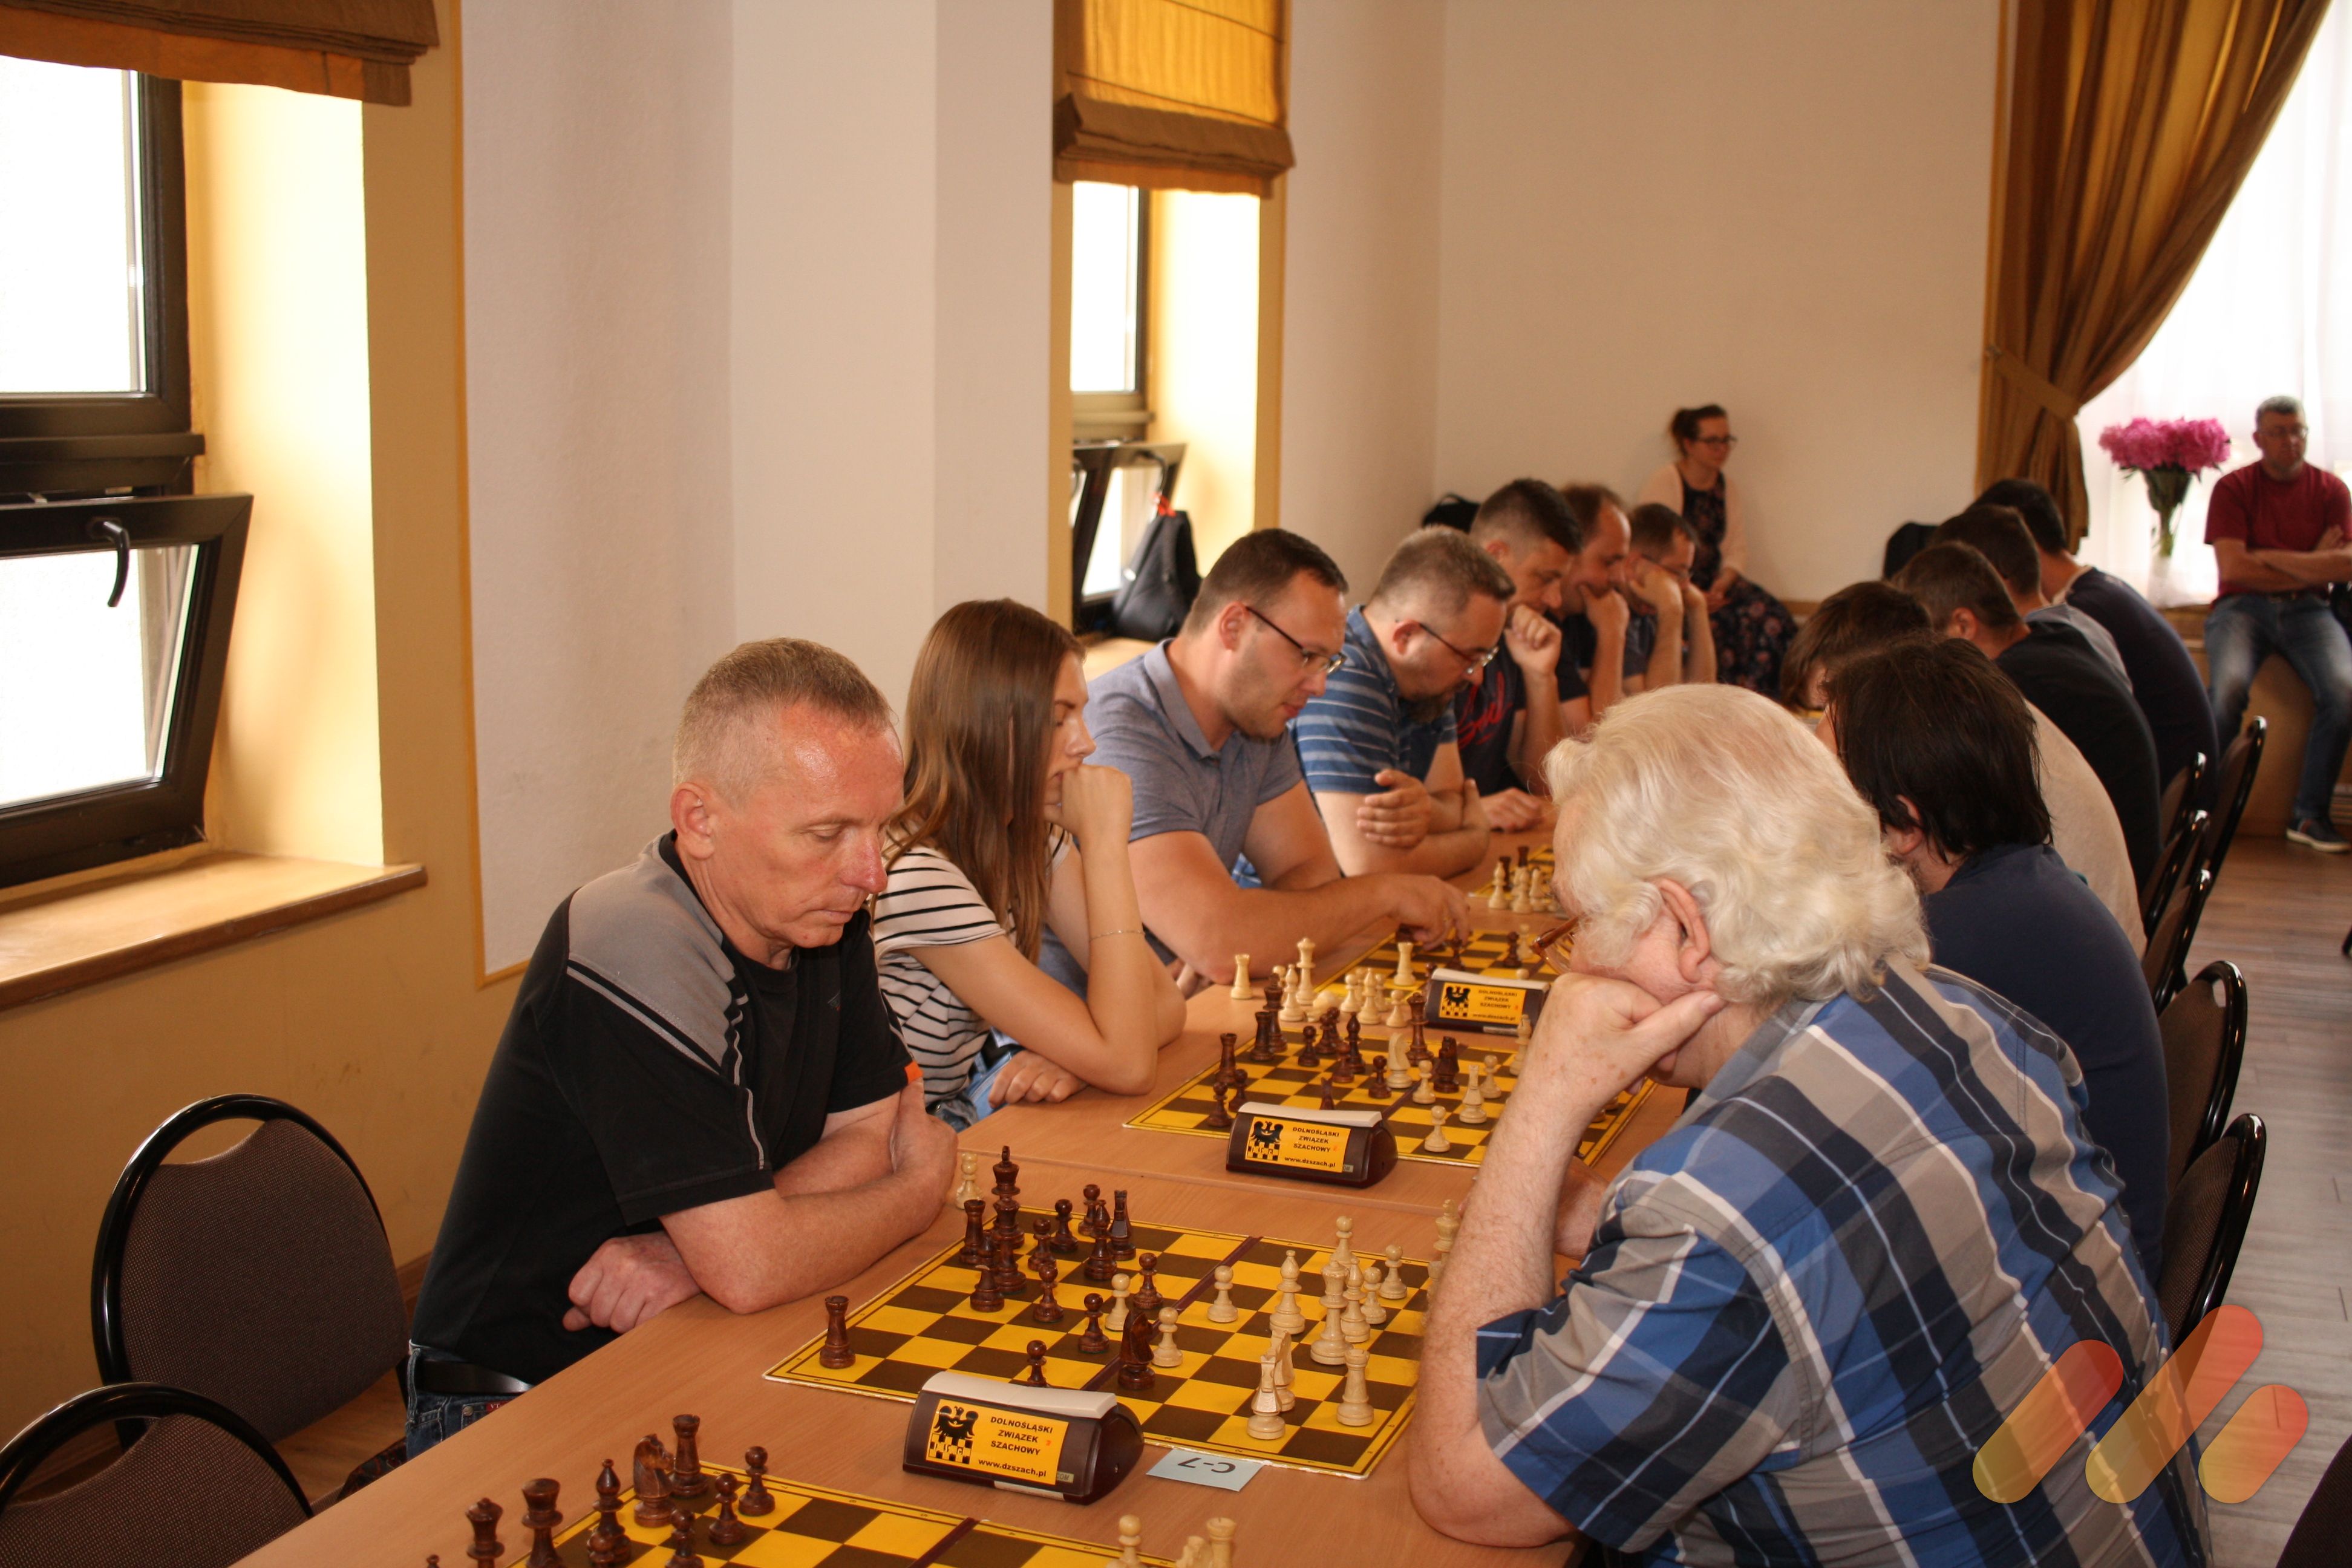 III Turniej szachowy pod patronatem Burmistrza Miasta Świebodzice